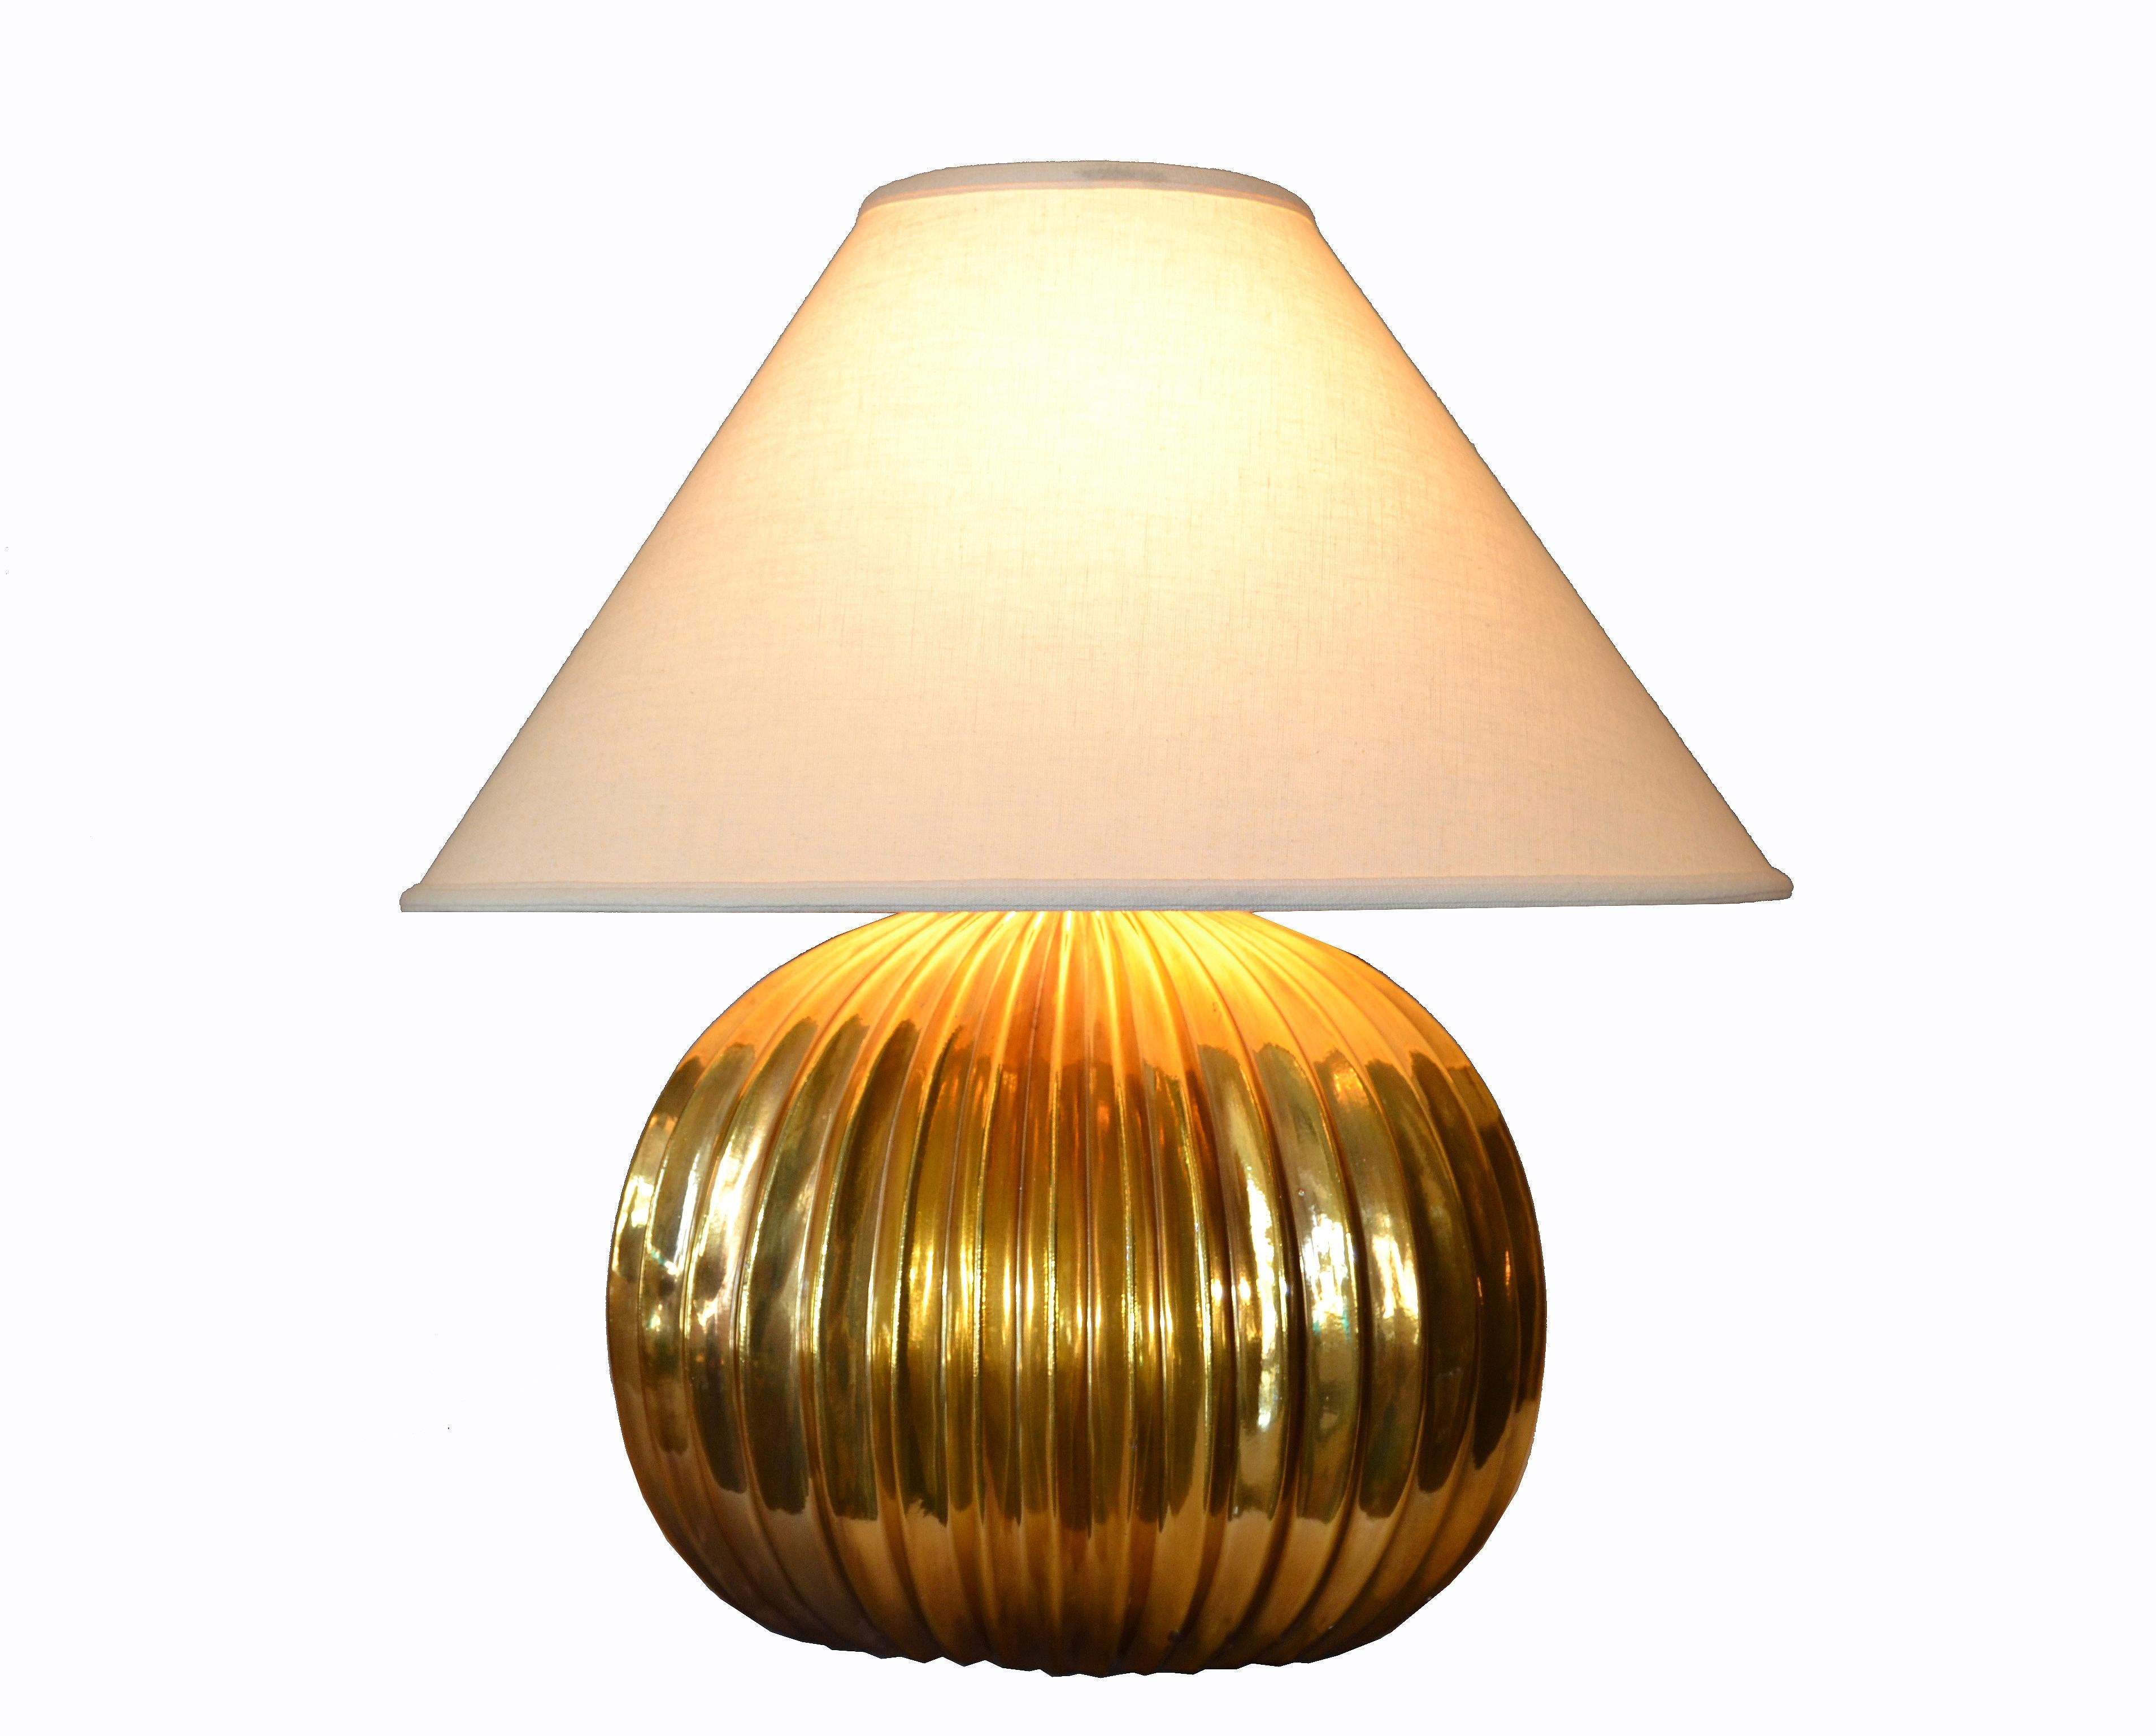 Magnifique lampe de table italienne du milieu du siècle dernier à côtes dorées avec un abat-jour ovale en lin.
Câblée pour les États-Unis, elle utilise une ampoule de 75 watts max. 75 watts.
Dimensions Abat-jour :
Largeur 23.25 pouces
Profondeur